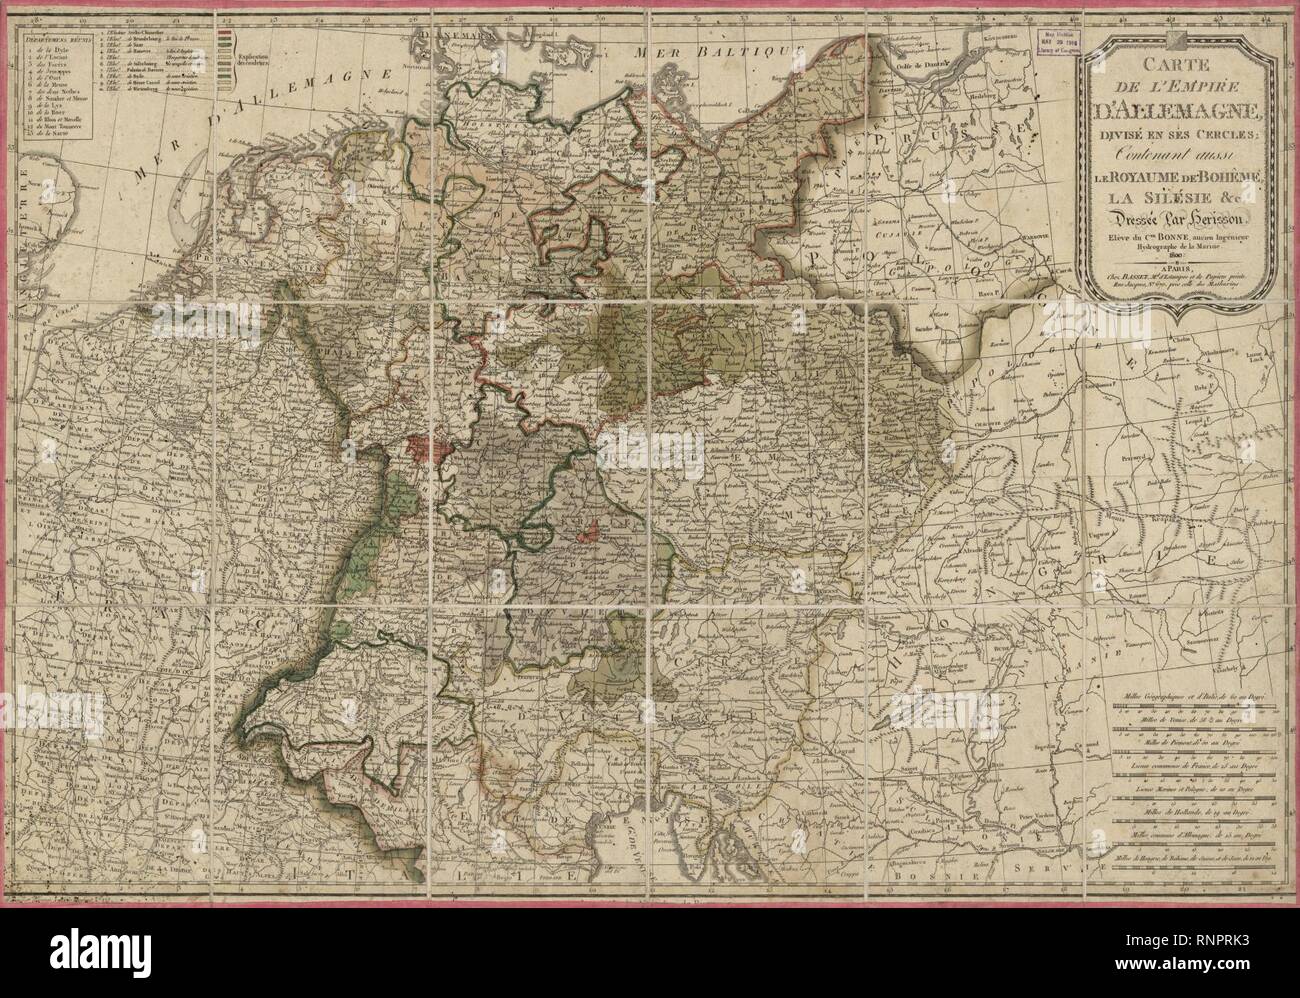 Carte de l'Empire d'Allemagne, divisé en ses cercles - contenant aussi le royaume de Bohême, la Silésie ecc. Foto Stock